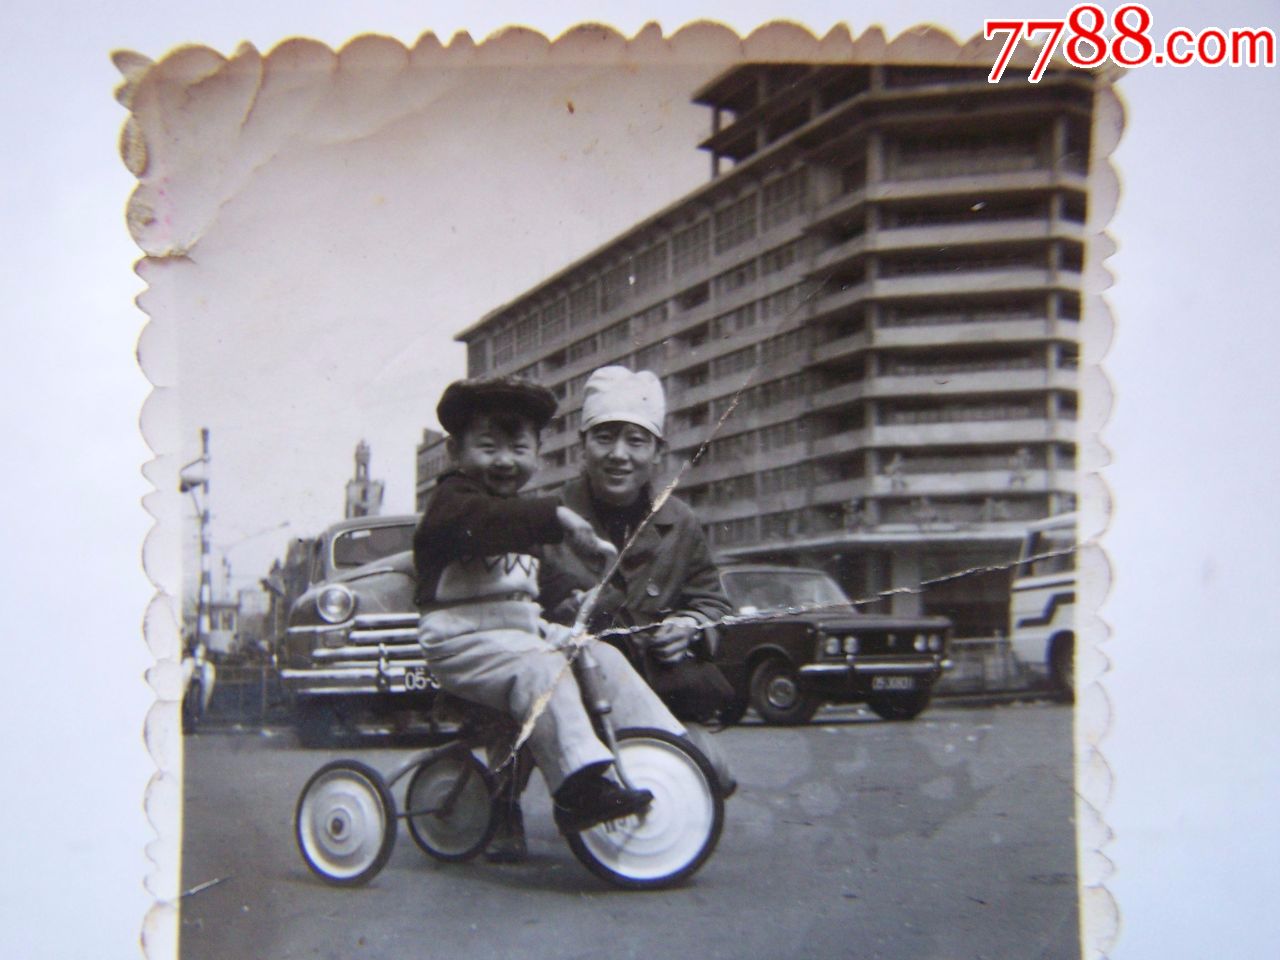 八十年代老照片小朋友骑单车好开心啊点图可放大